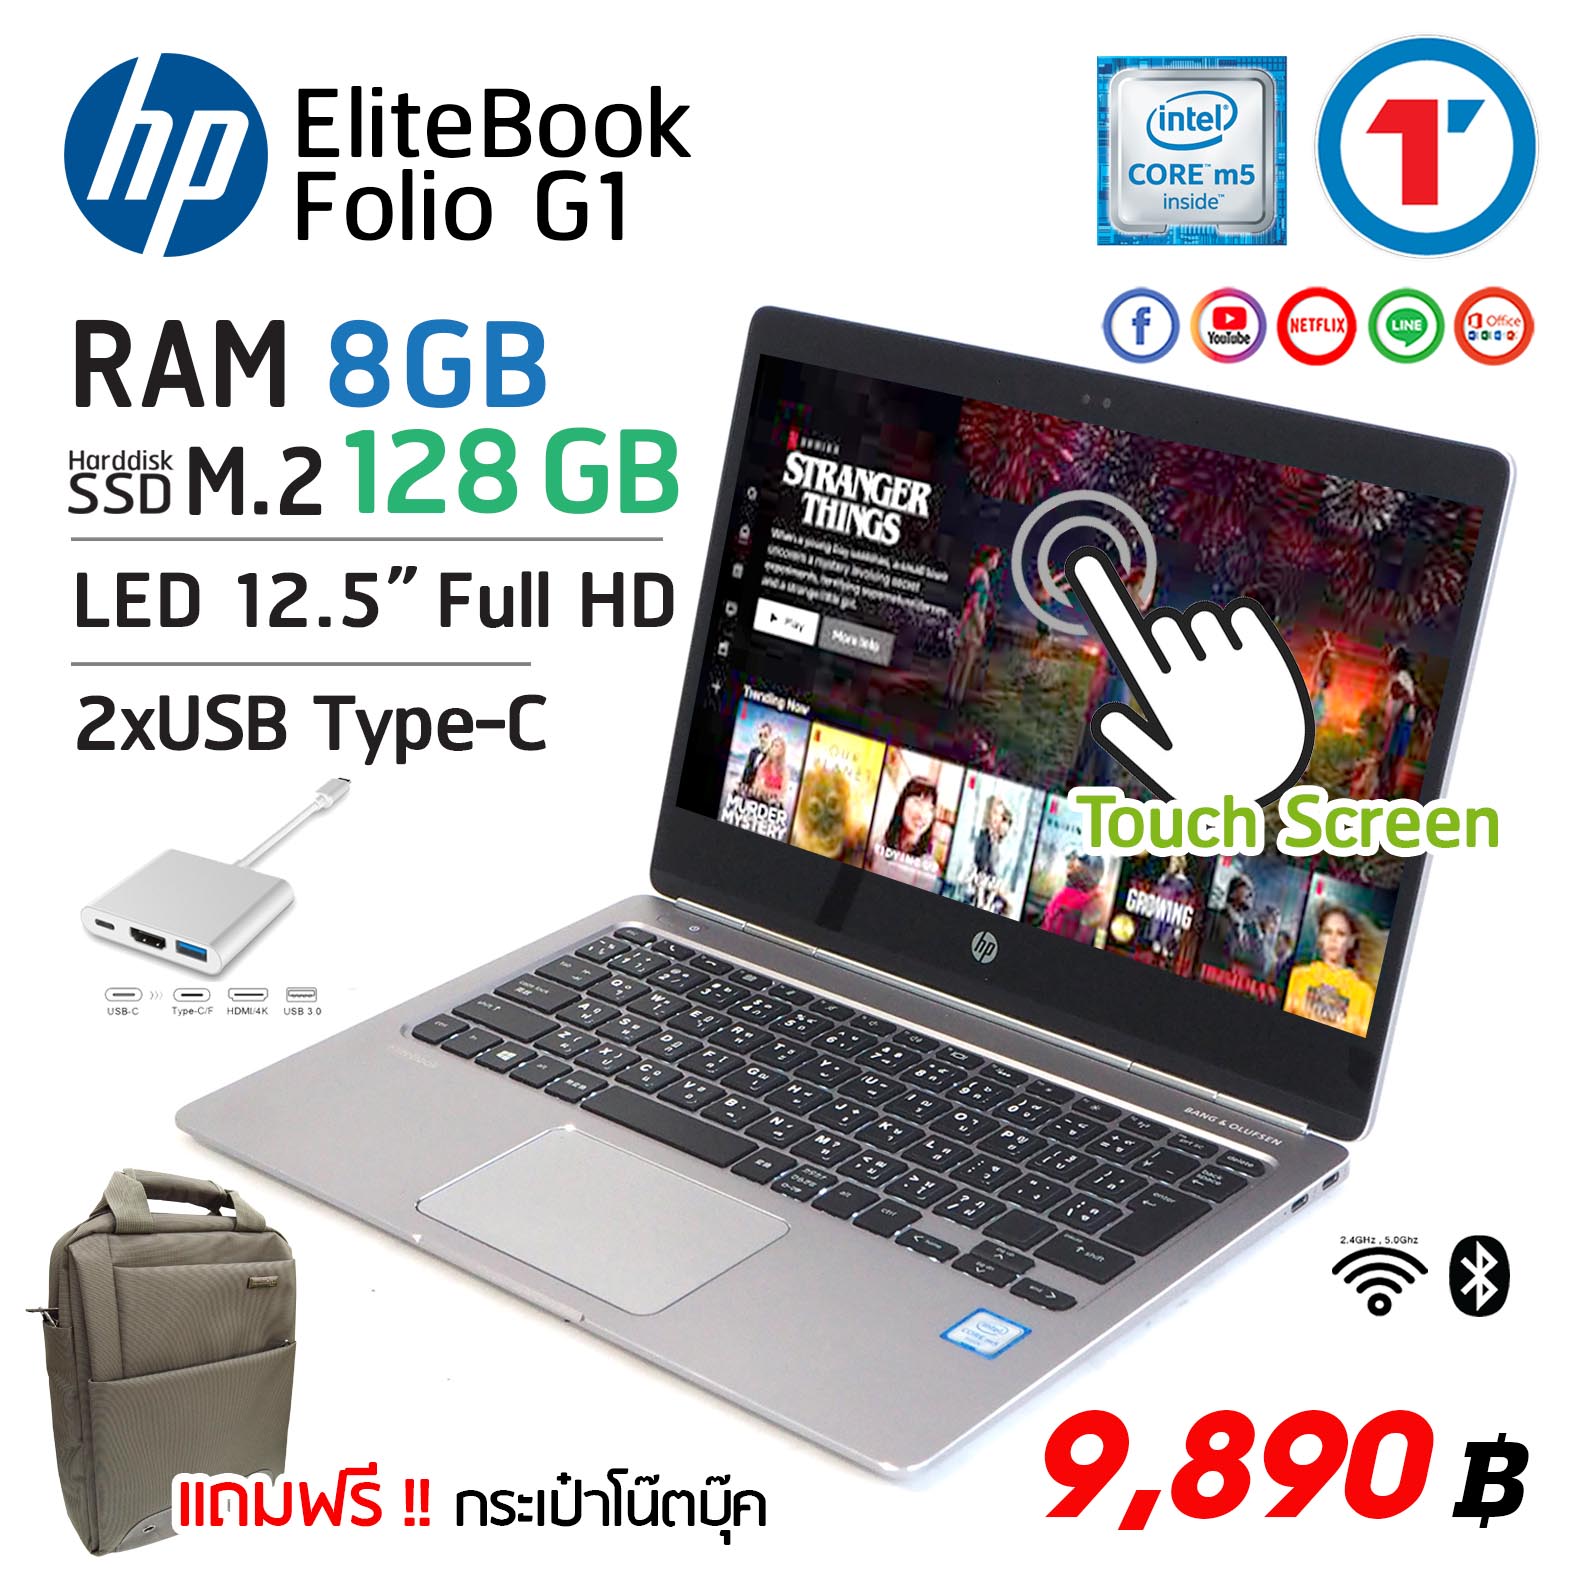 โน๊ตบุ๊ค HP Elitebook Folio 12.5 นิ้ว FHD หน้าจอสัมผัส RAM 8 GB SSD M.2 128 GB มีกล้องในตัว แถมฟรีกระเป๋า-USB Adapter laptop 2021 used notebook สภาพดี มีประกัน By Totalsolution